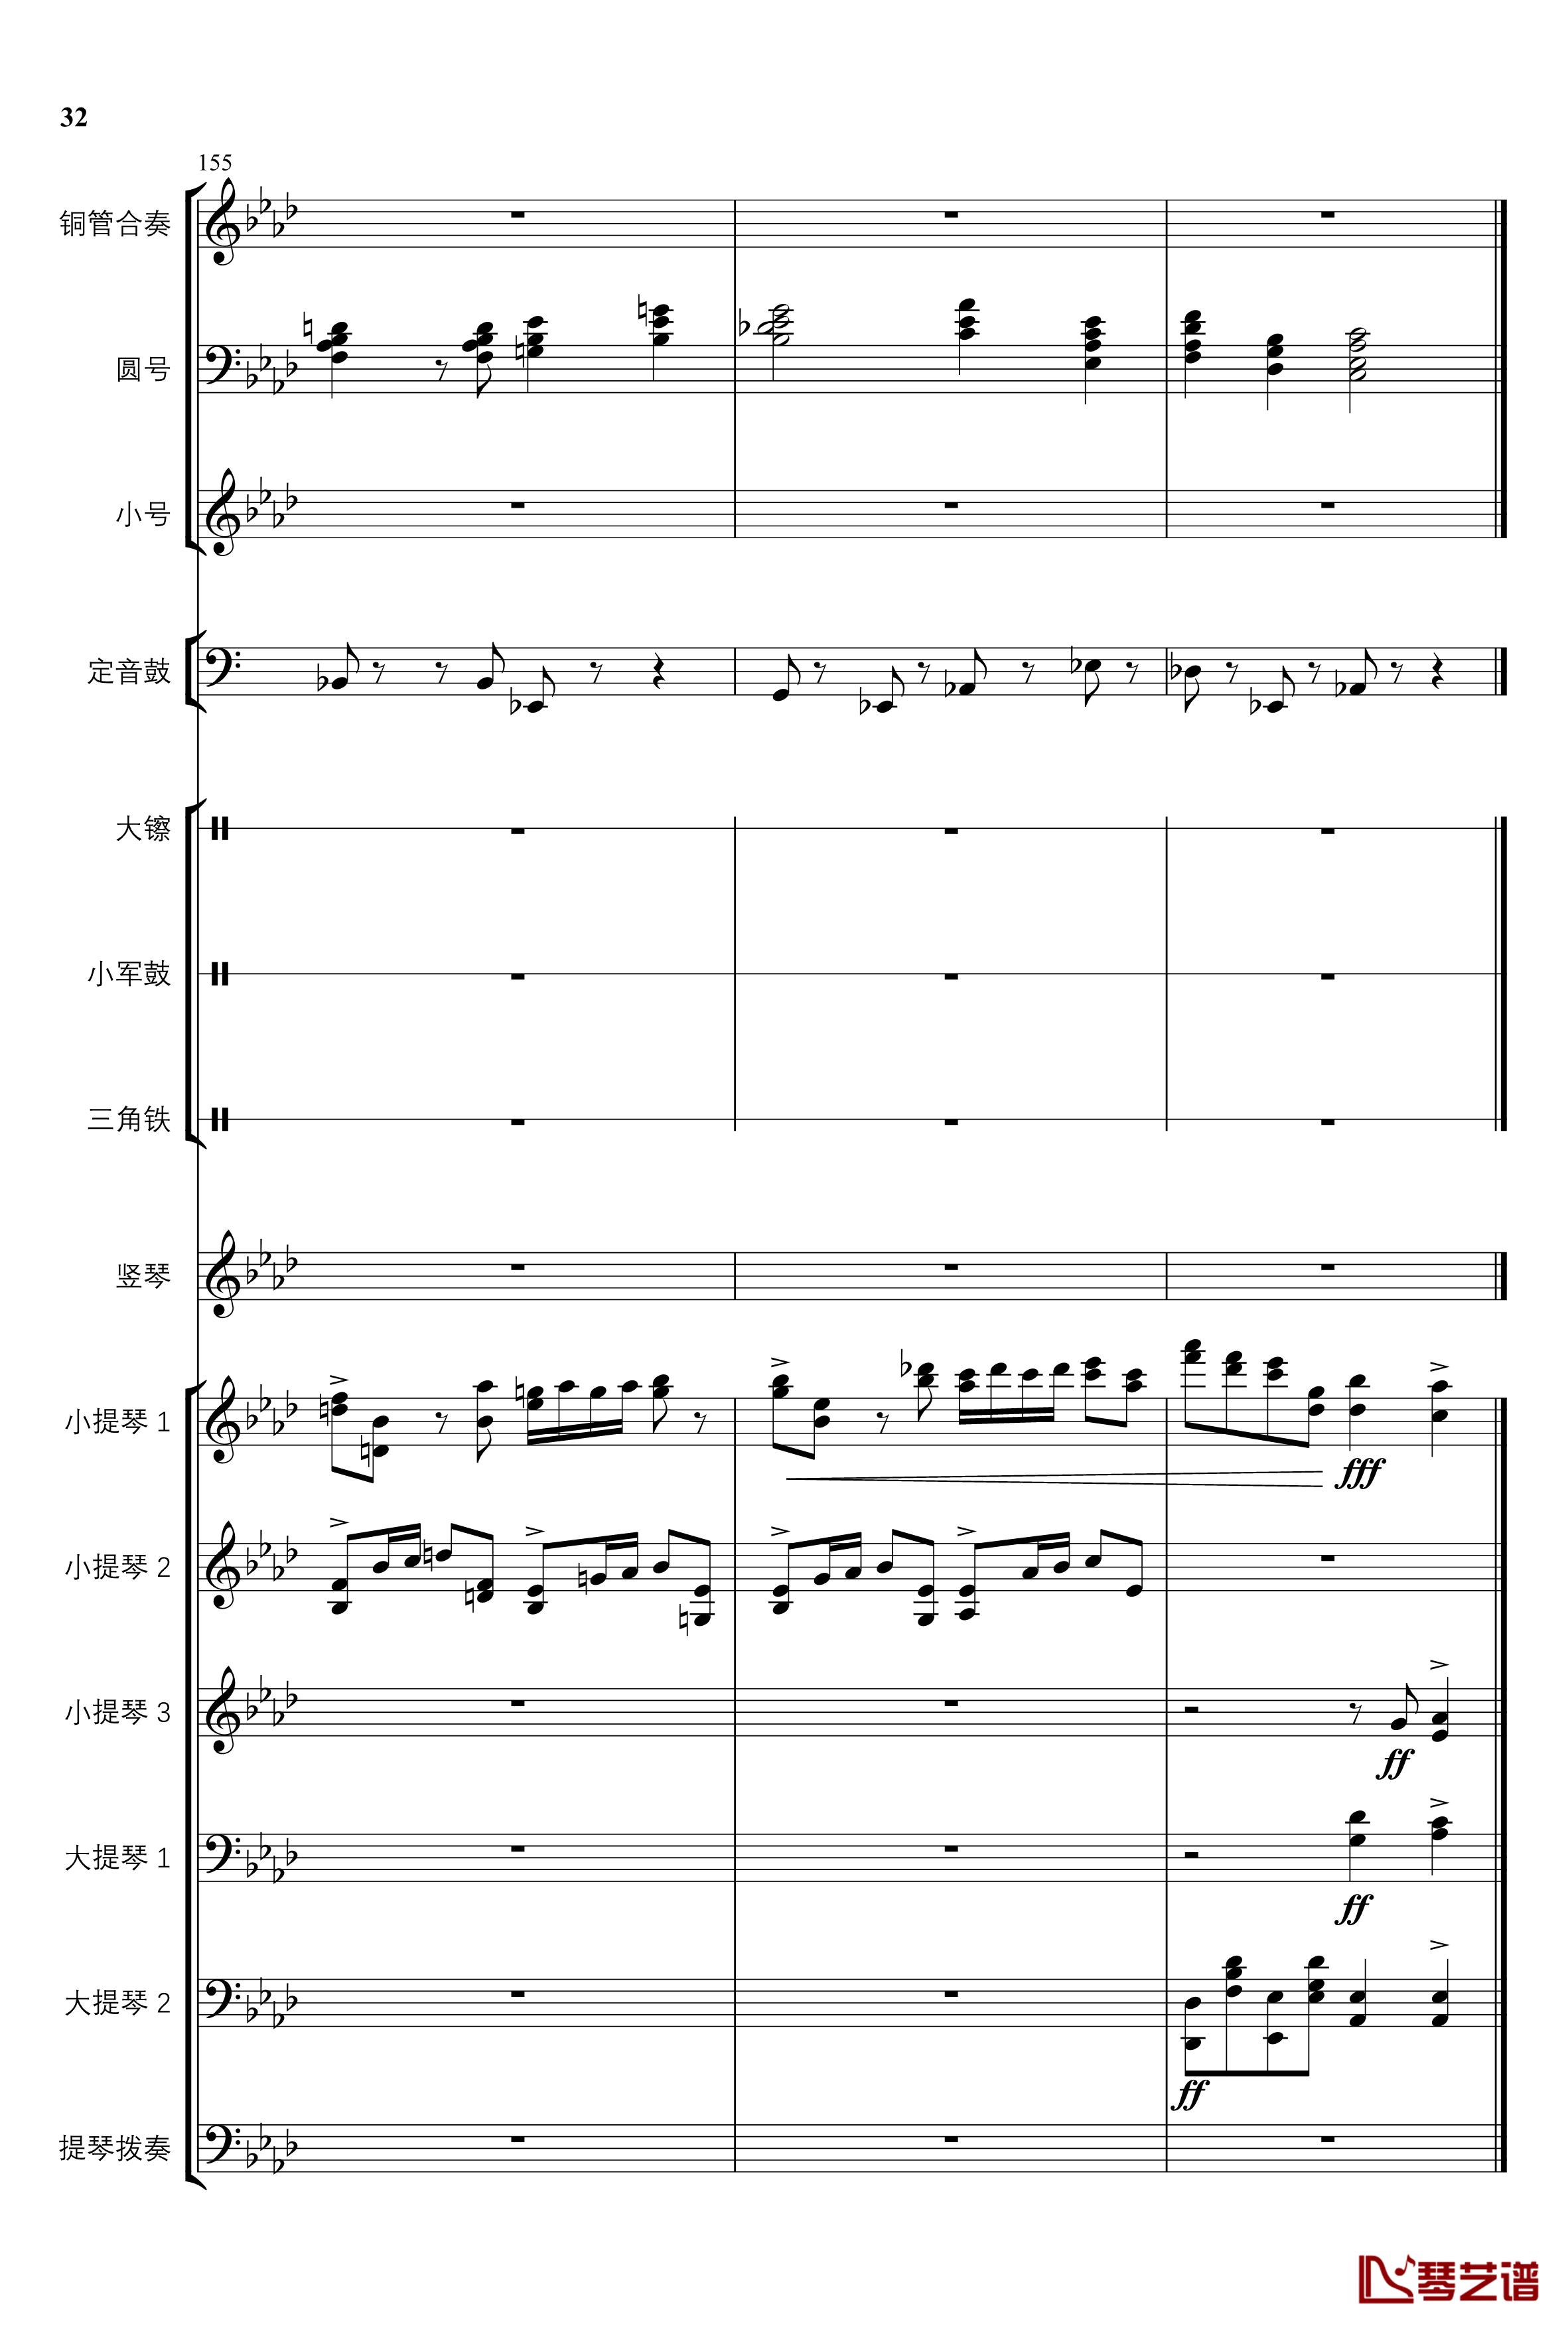 2013考试周的叙事曲钢琴谱-管弦乐重编曲版-江畔新绿32